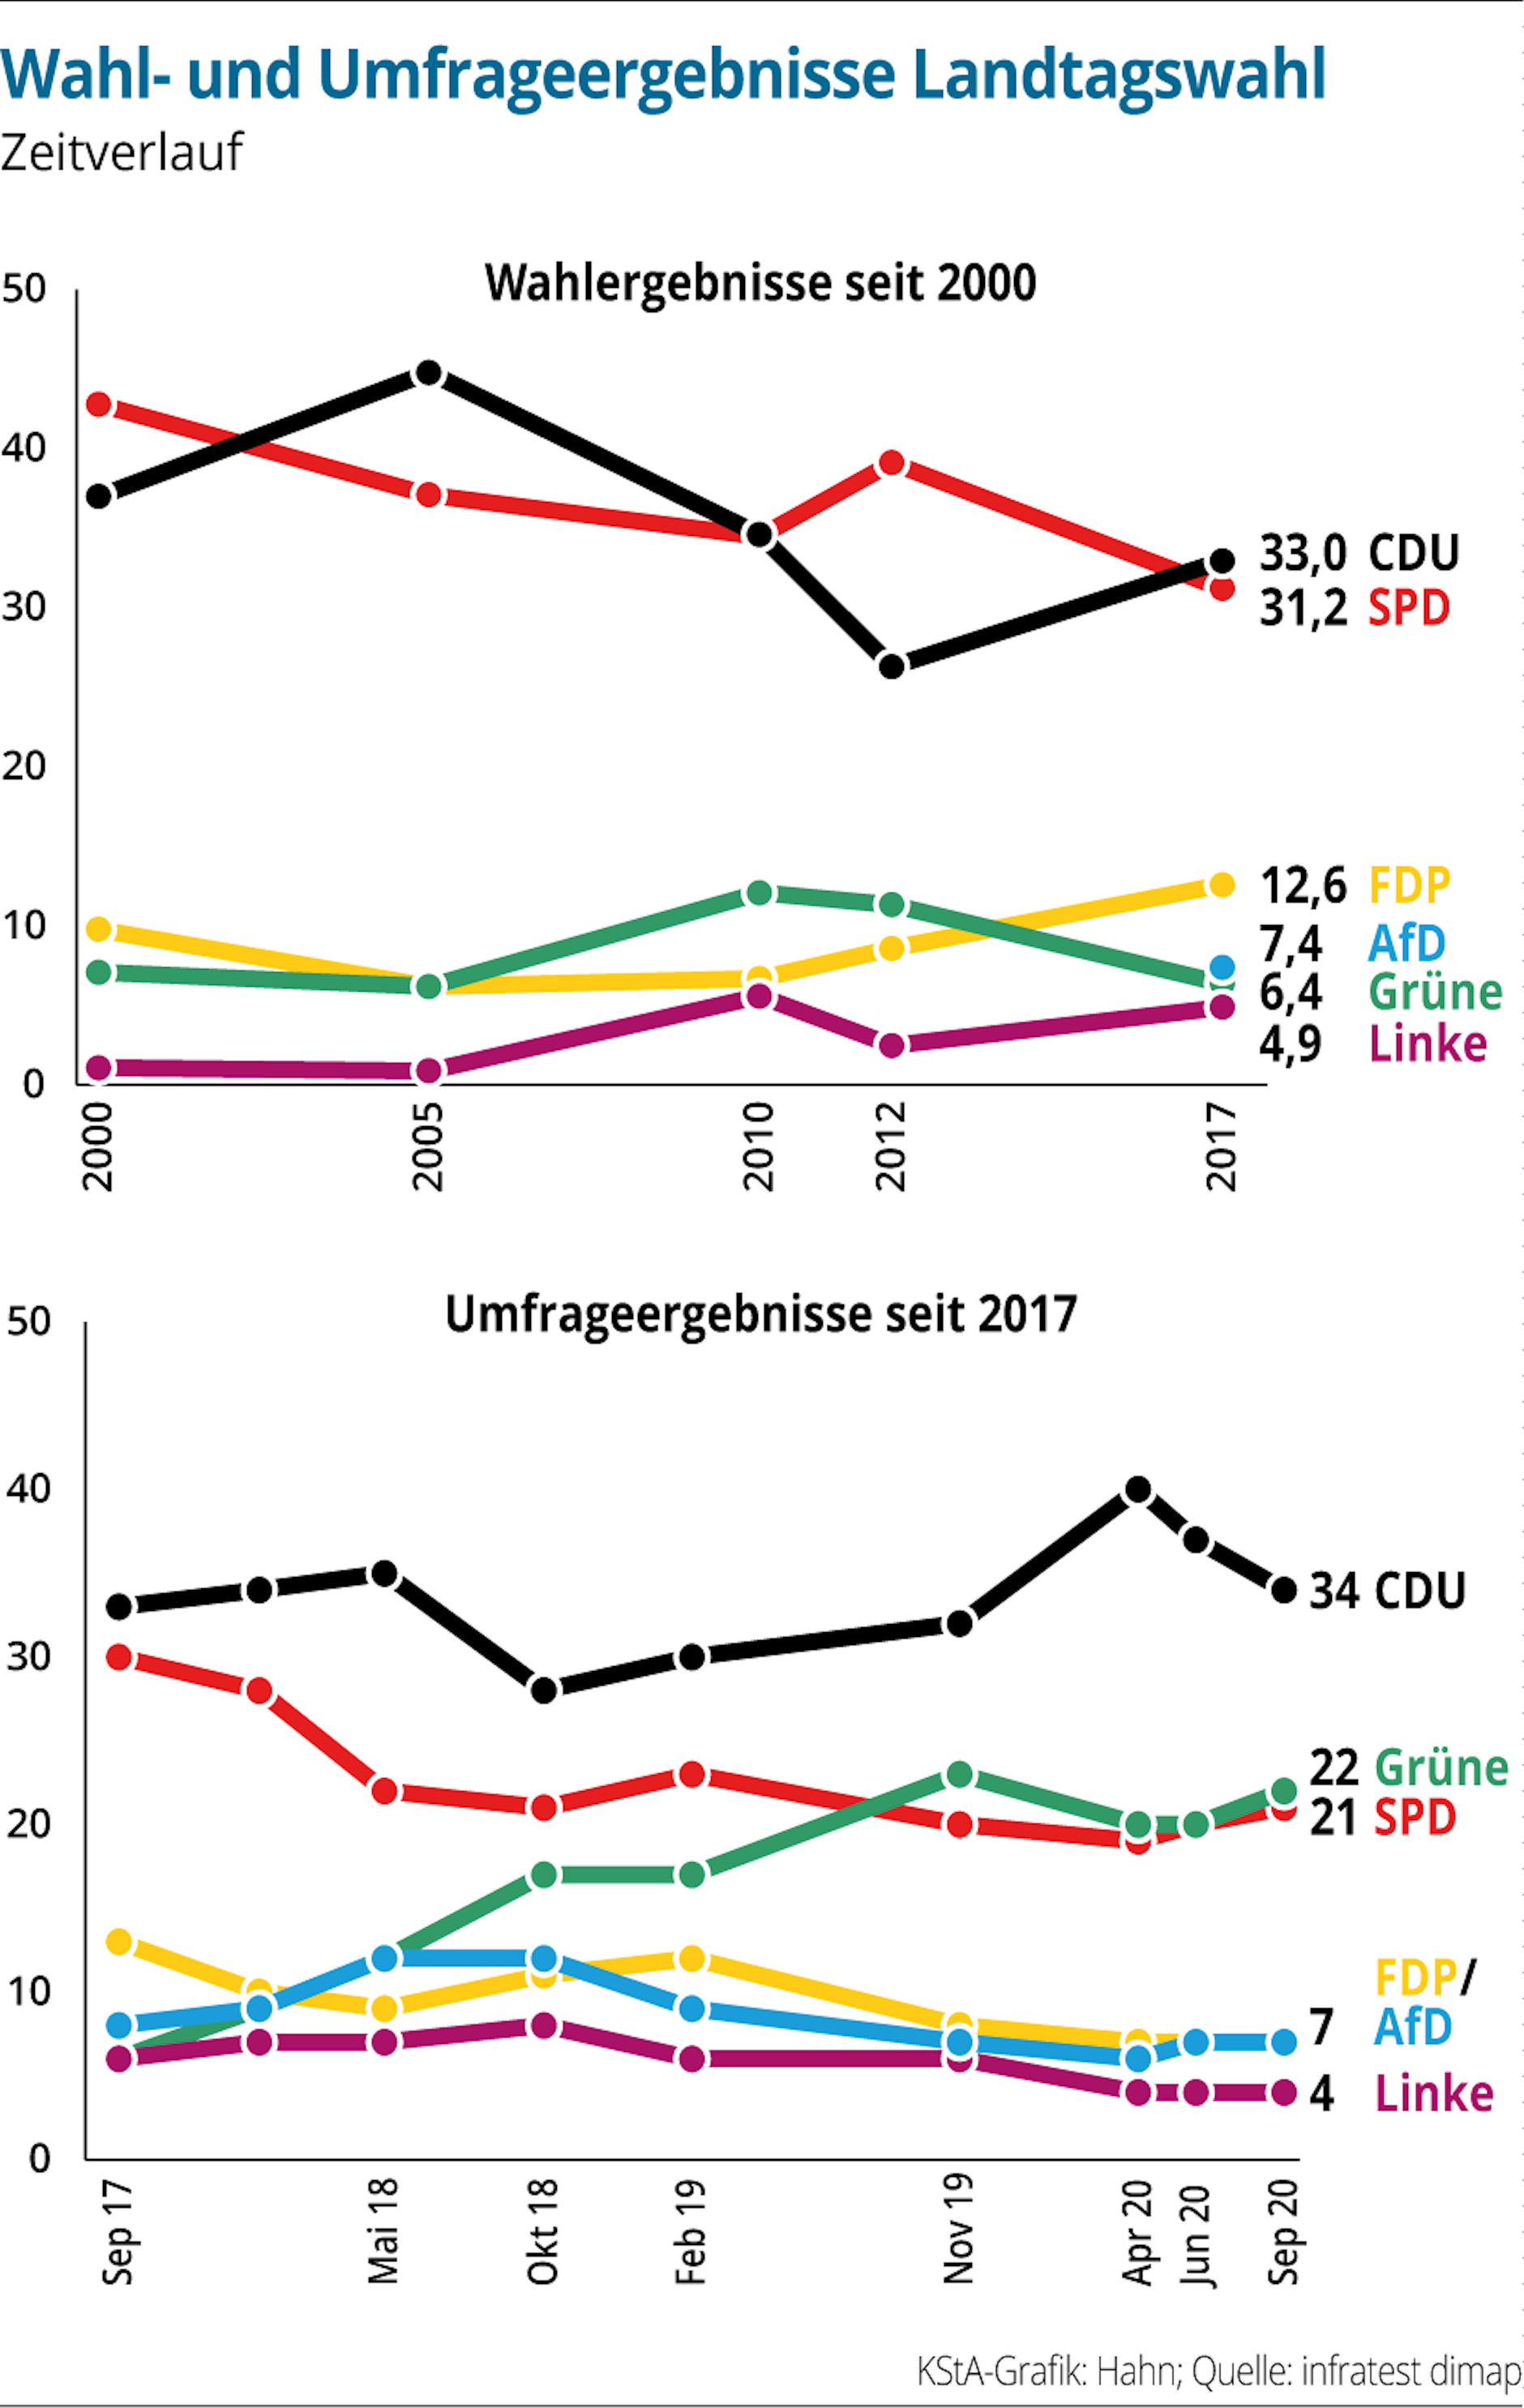 NRW-Wahl-Umfrageergebnisse-Zeitverlauf